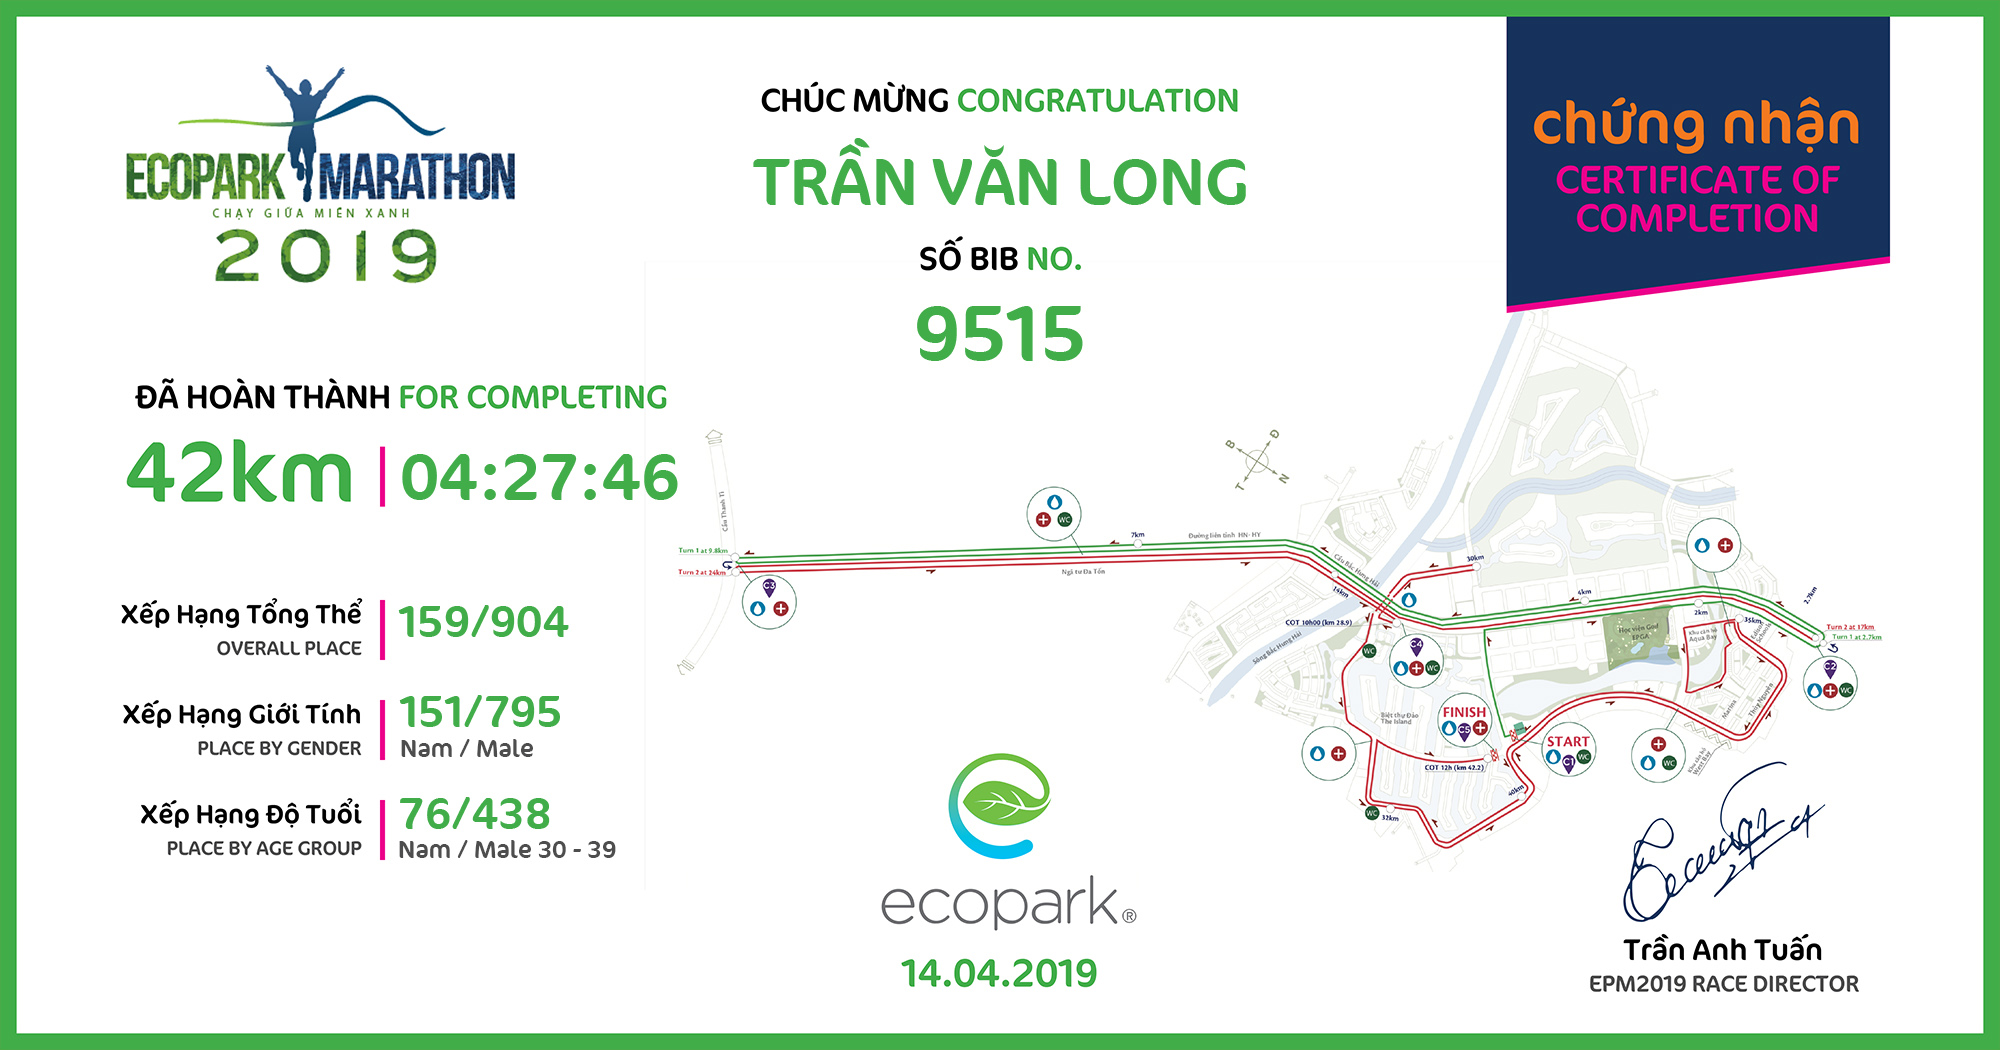 9515 - Trần Văn Long